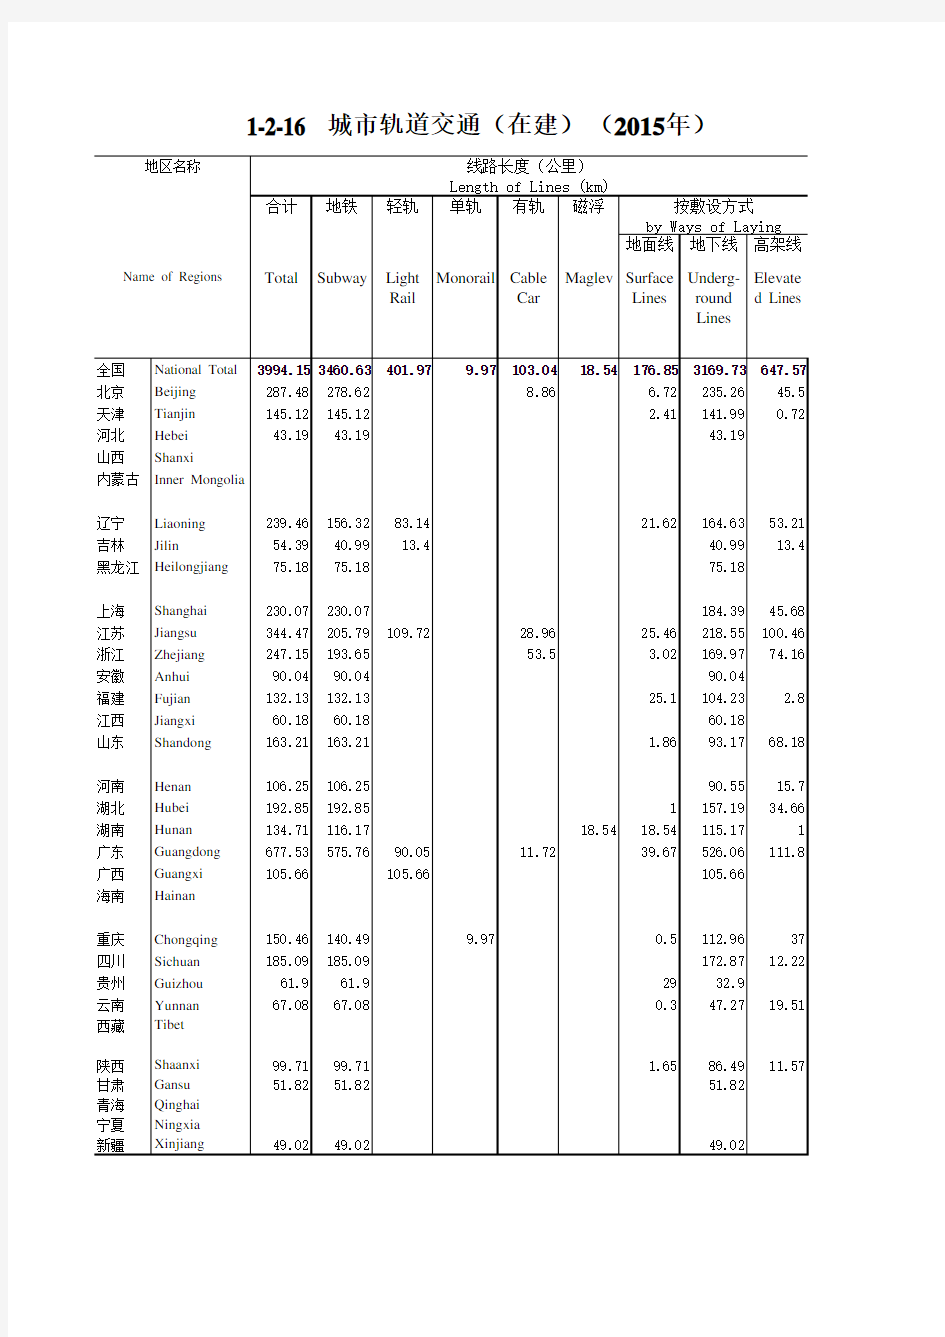 中国城乡建设统计年鉴2015全国各省市县数据：1-城市轨道交通(在建)(2015年)